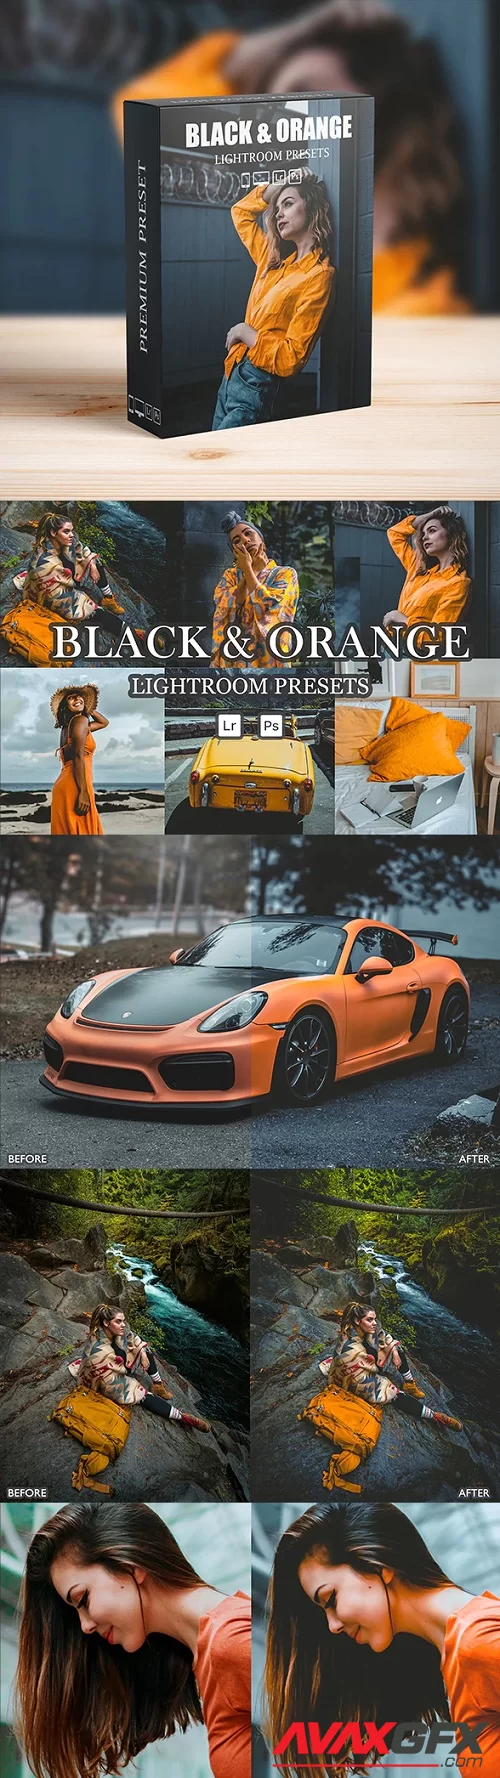 Dark and Orange Lightroom Presets for Mobile and Desktop - 32518920